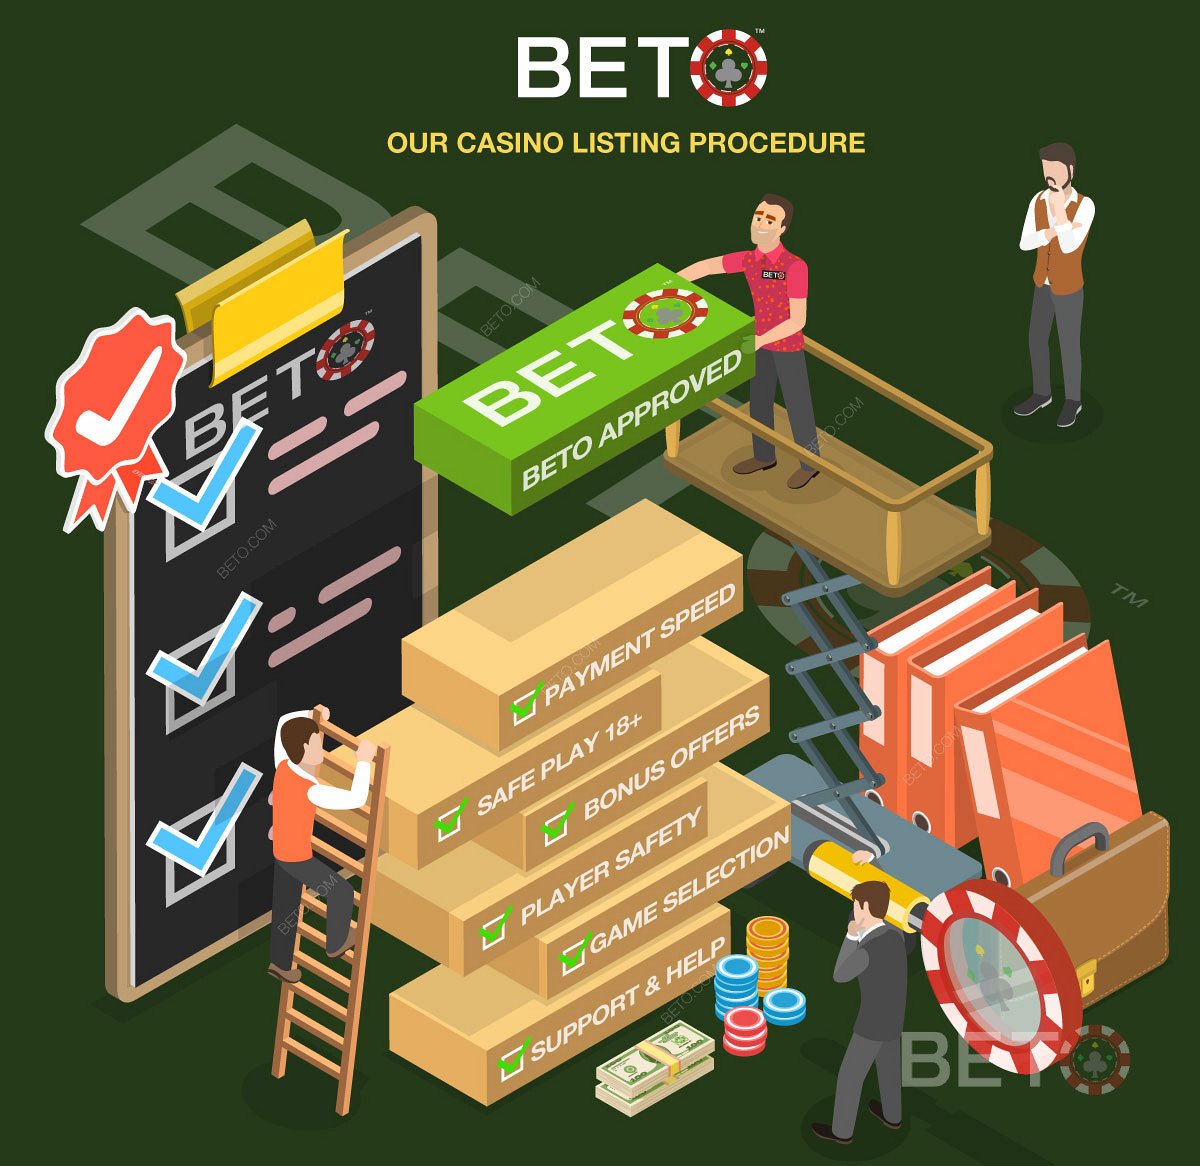 Így értékeli a BETO a potenciális online kaszinókat